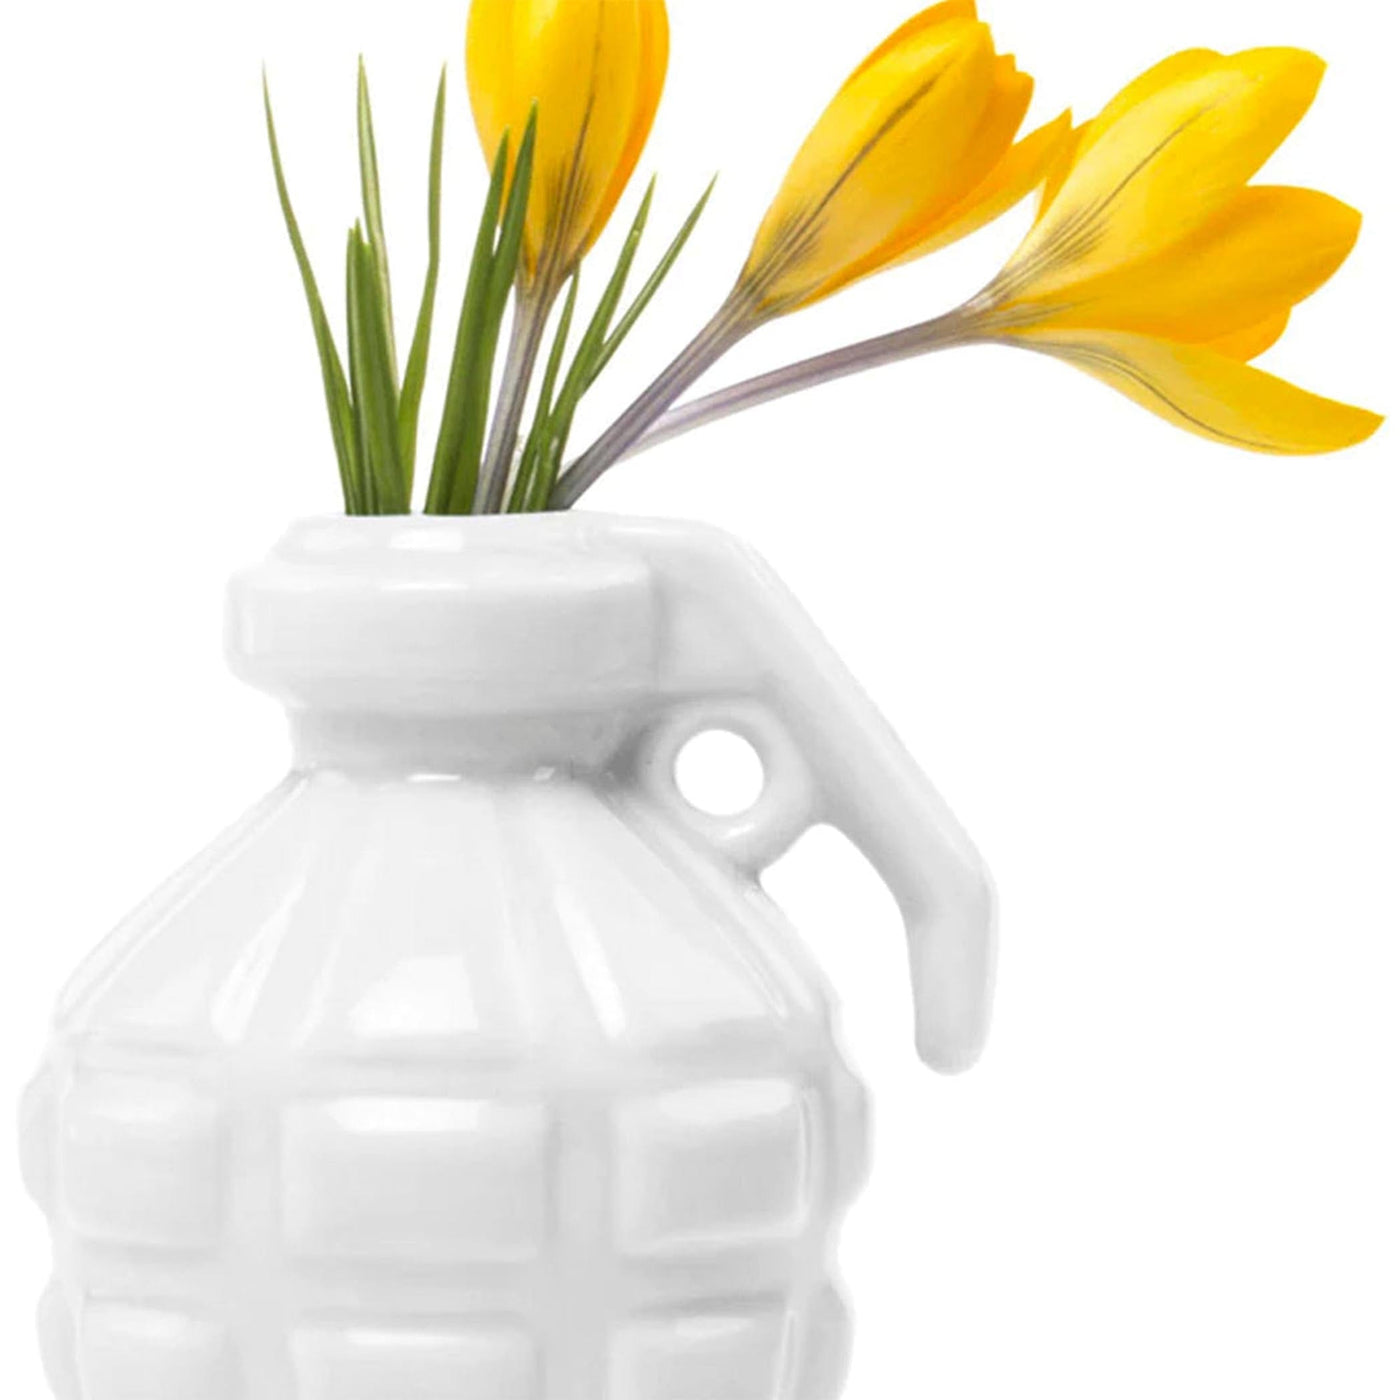 Laissez-vous inspirer par la toile parfaite offerte par le vase ne forme de grenade Kapow pour exprimer votre créativité florale, des fleurs délicates aux arrangements les plus audacieux.